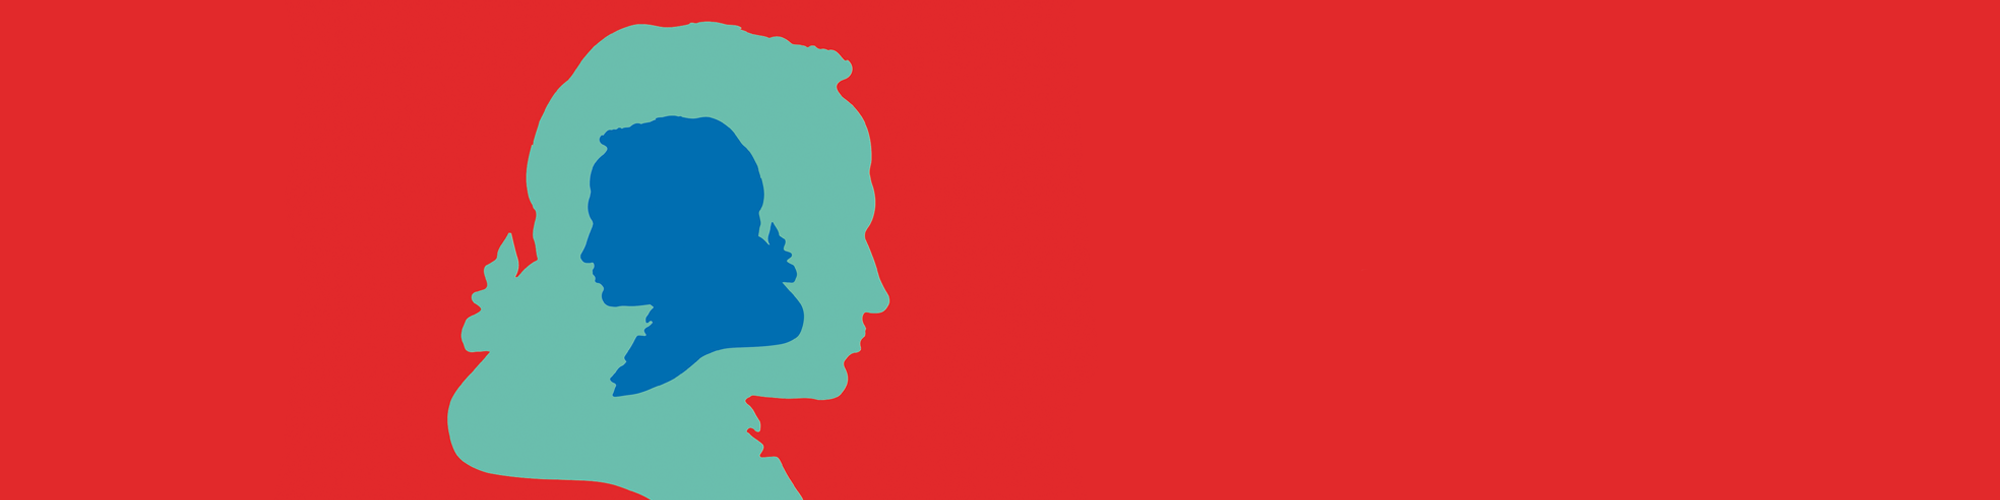 Kopf von Immanuel Kant als Scherenschnitt auf rotem Hintergrund